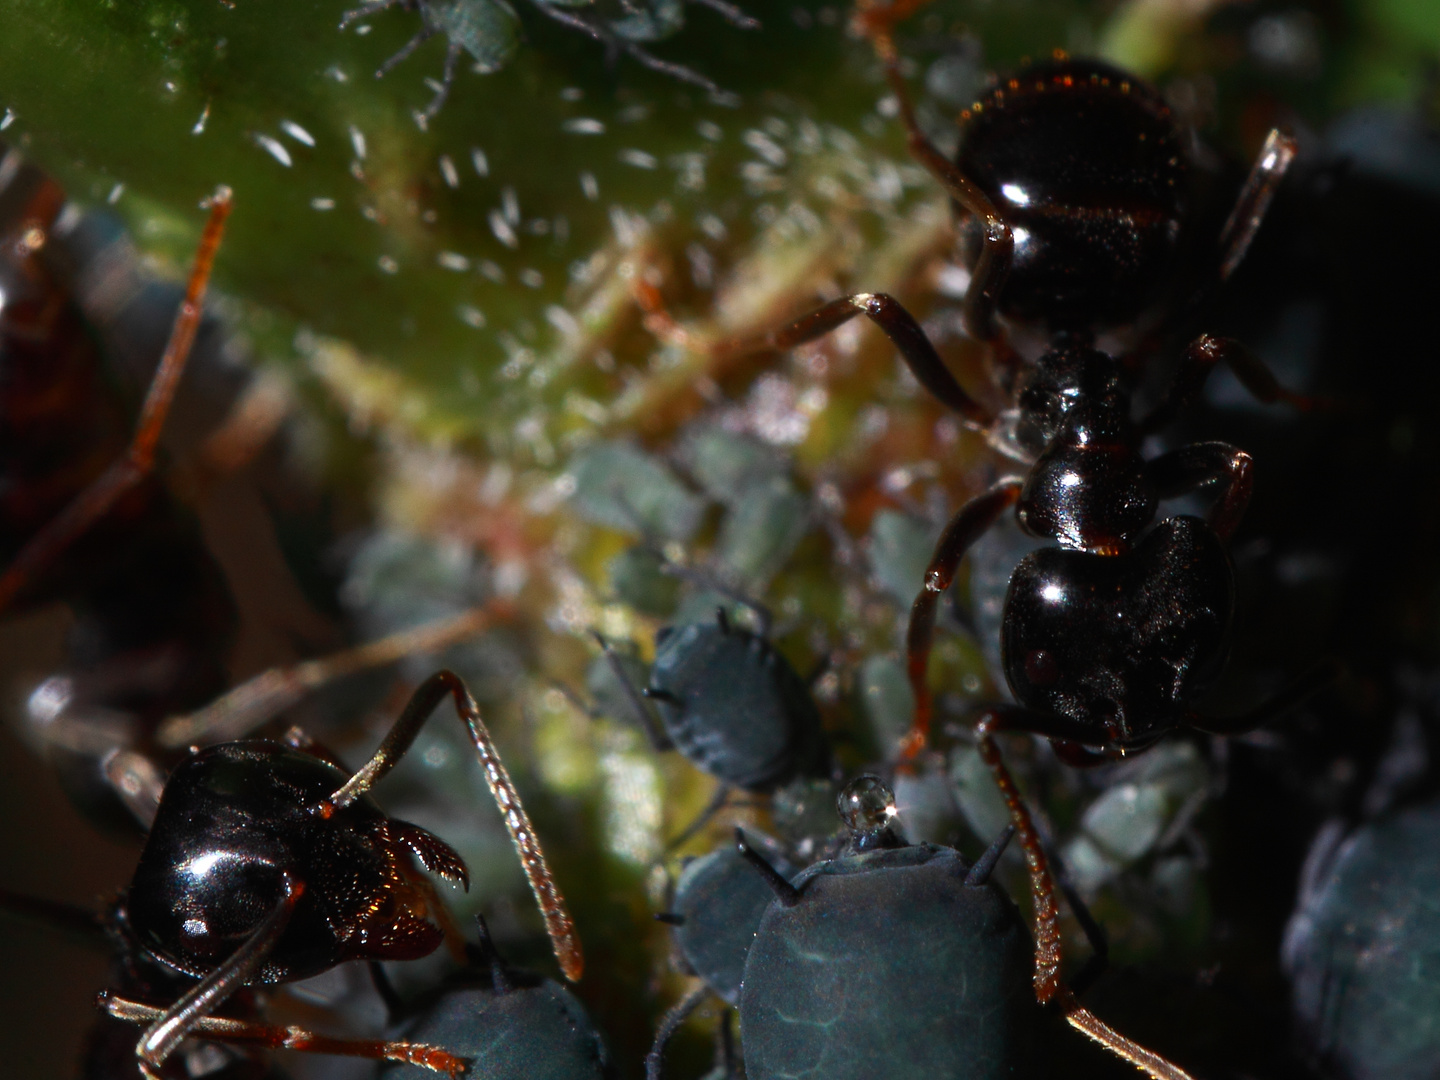 Ameisen melken Blattläuse